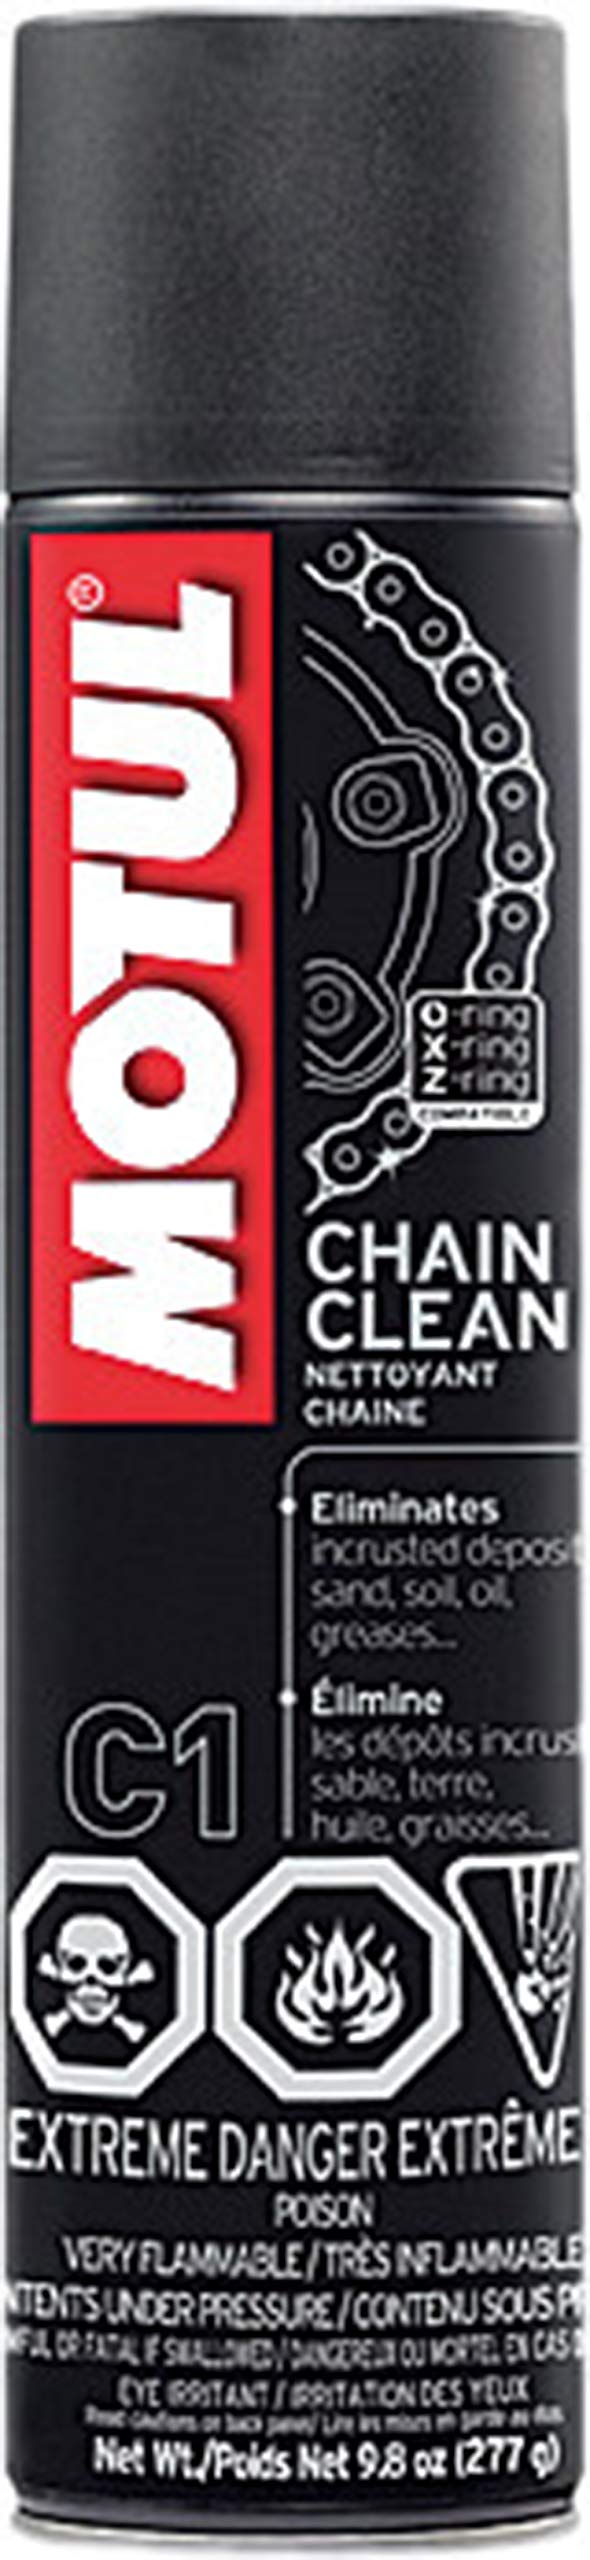 Motul Chain Cleaner 103243 C1, 9.8 oz, 9.8 Fluid_Ounces - LeoForward Australia